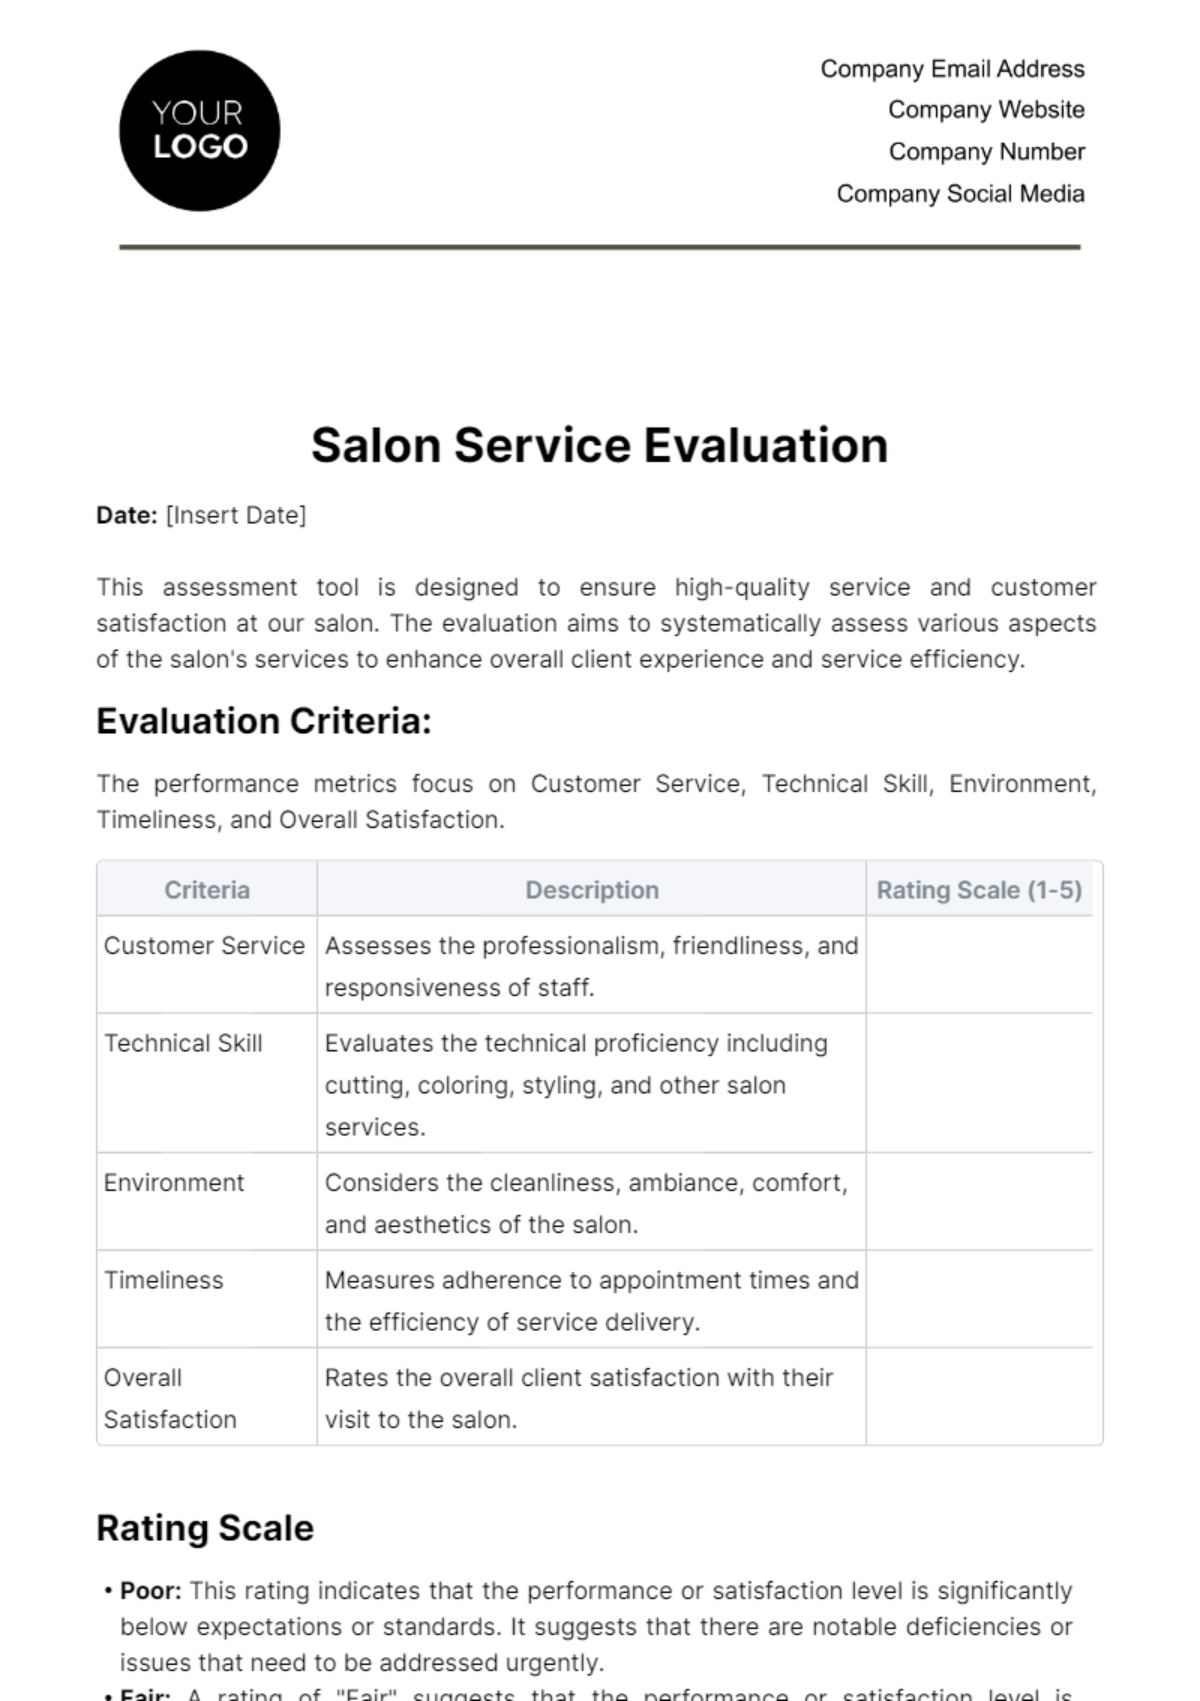 Salon Service Evaluation Template